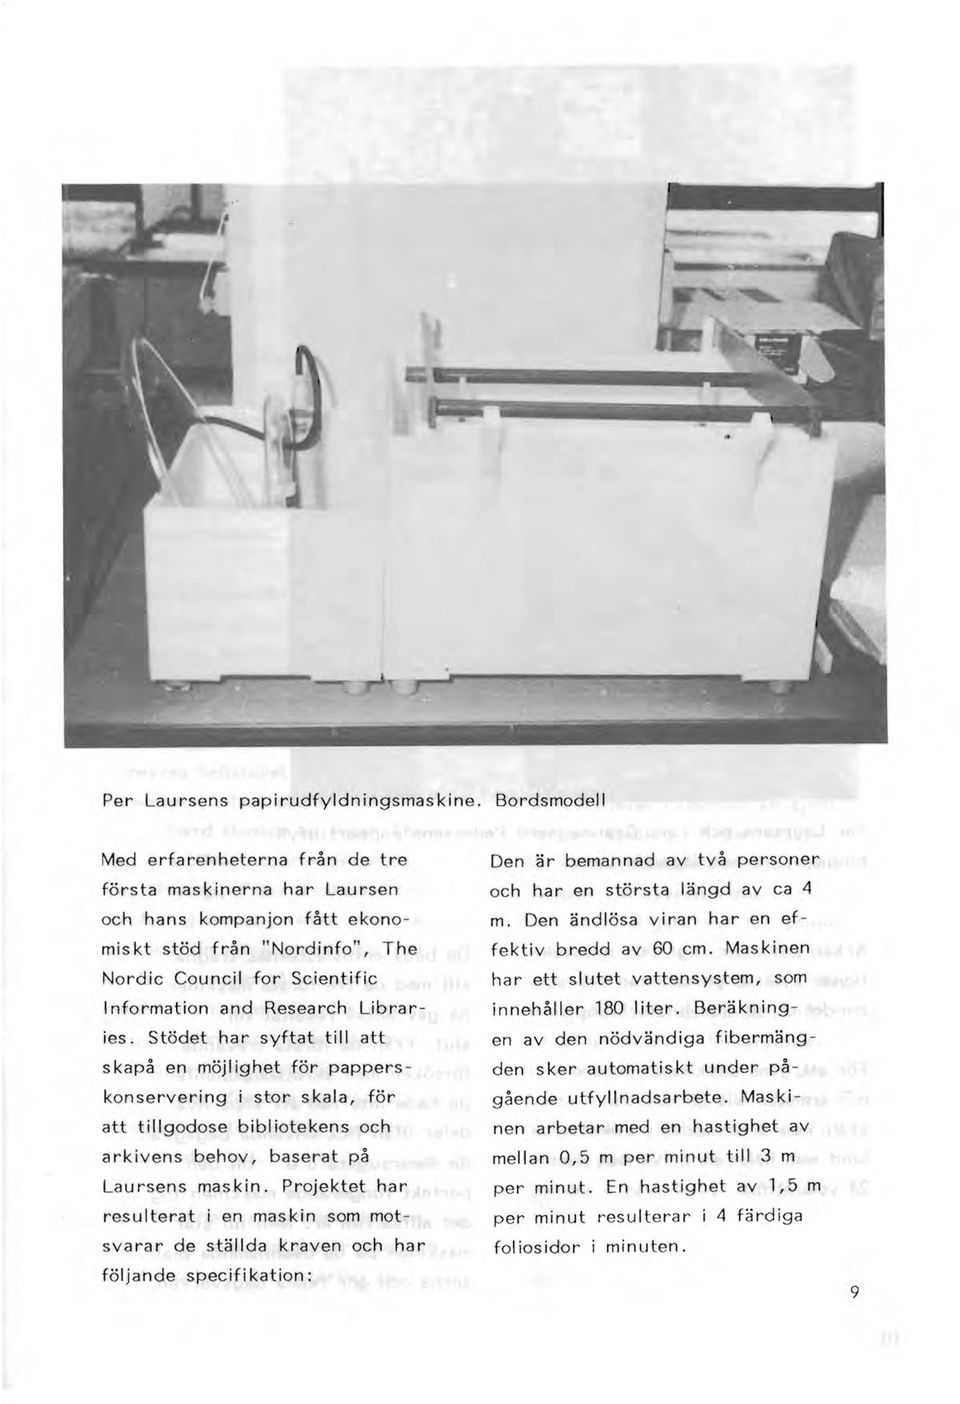 Stödet har syftat till att s kapå en möjl ighet för papperskonservering i stor skala, för att tillgodose bibi iotekens och arkivens behov, baserat på Laursens maskin.